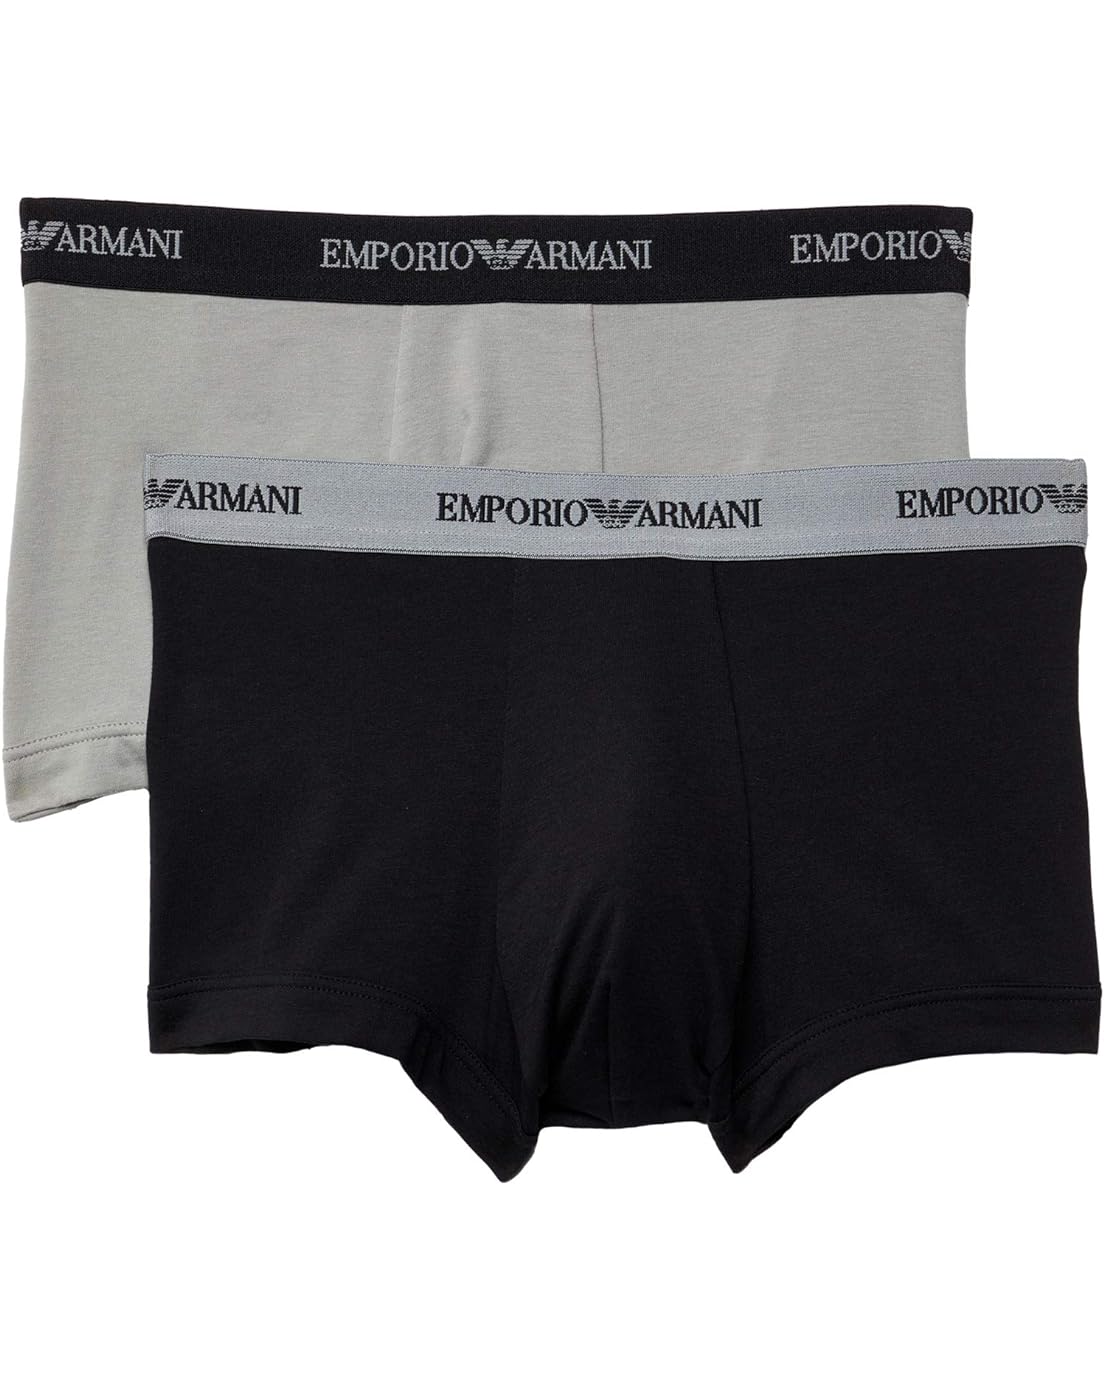 Emporio Armani 2-Pack Stretch Cotton Trunk